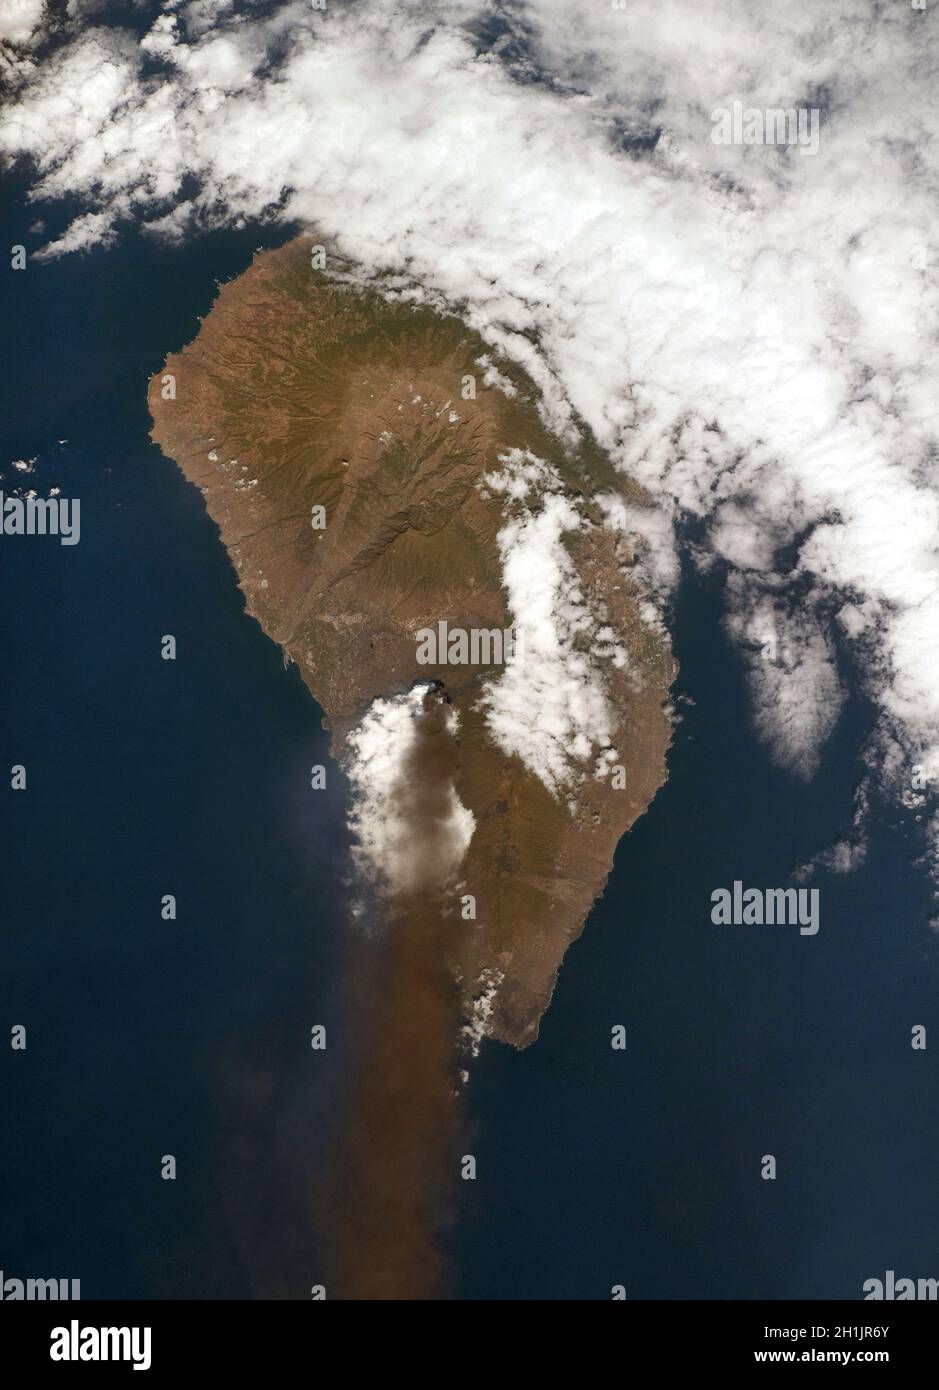 Vulkan Cumbre Vieja, Insel La Palma, Kanarische Inseln, Spanien. Die vulkanische Wolke enthält eine Mischung aus Asche, Schwefeldioxid und anderen vulkanischen Gasen. Der Vulkan brach zuletzt 1971 aus. Der Ausbruch von 2021 begann am 19. September. Dieses Bild wurde von der Internationalen Raumstation am 4. Oktober 2021 aufgenommen. Eine optimierte und digital verbesserte Version eines NASA/ESA-Bildes. Obligatorische Gutschrift: NASA/ESA/T. Pesquet. Hinweis: Nutzungseinschränkungen: Nicht als Billigung zu präsentieren. Stockfoto